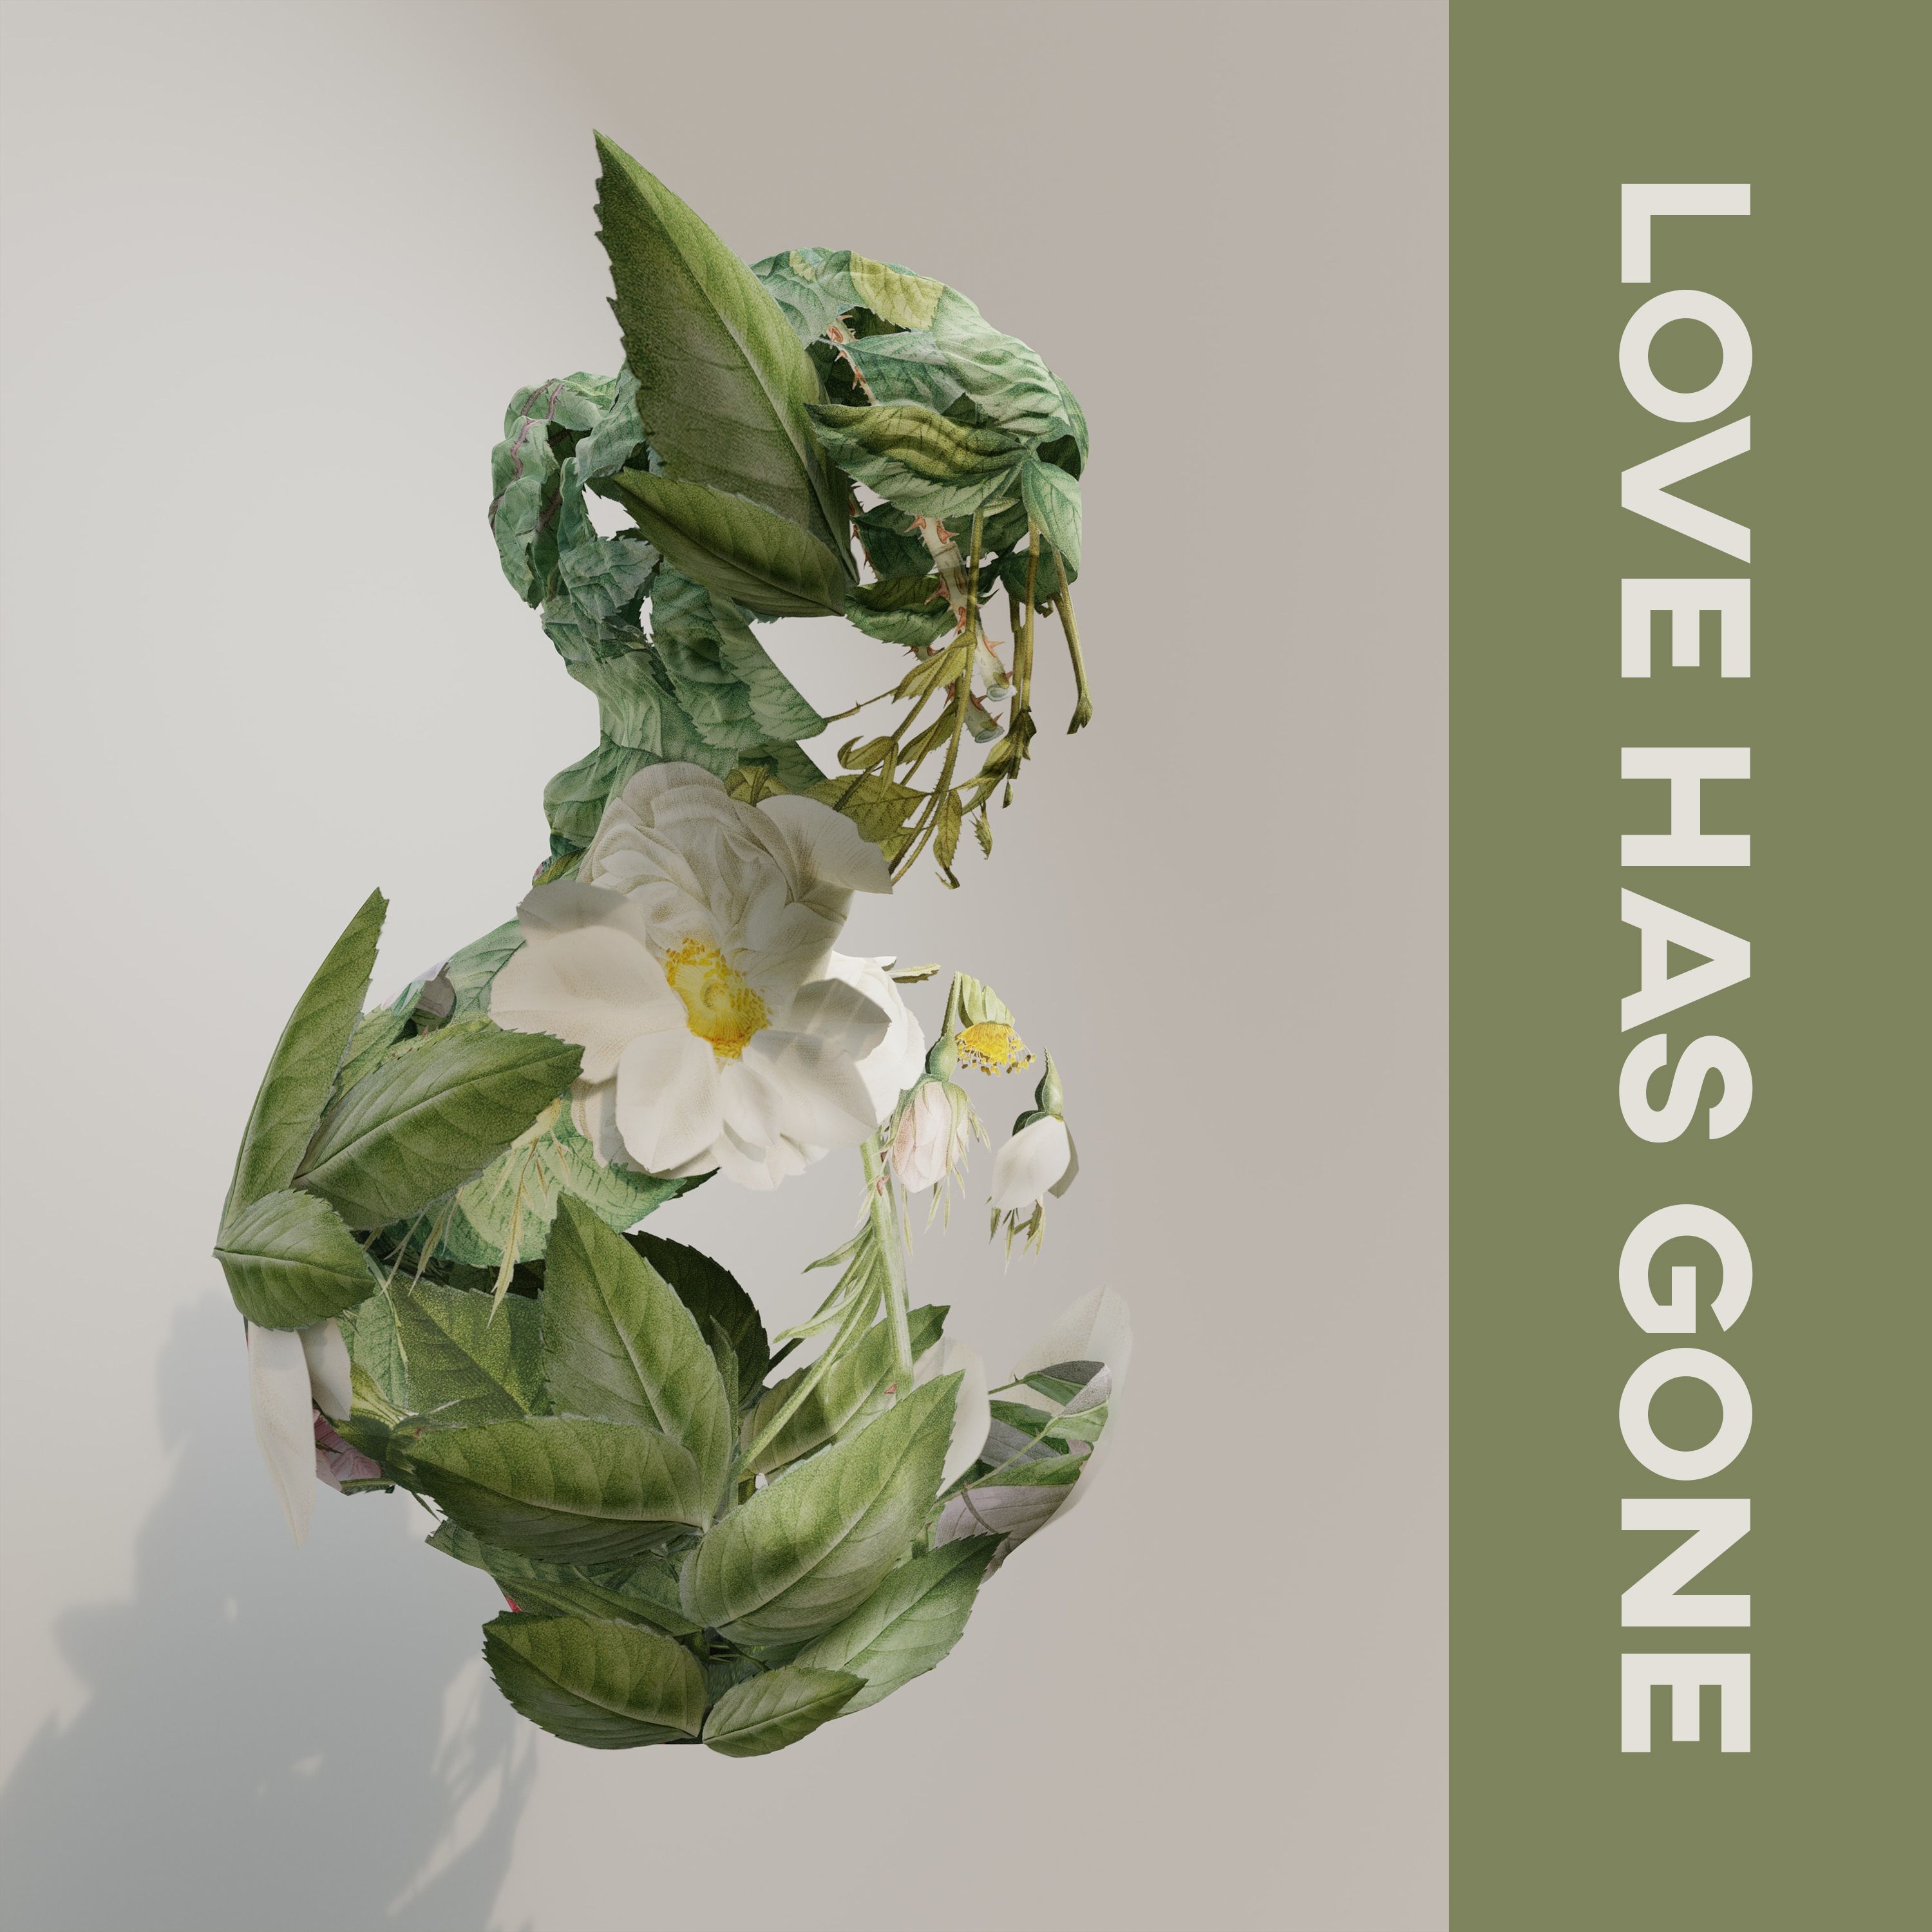 הורד c152 - Love Has Gone